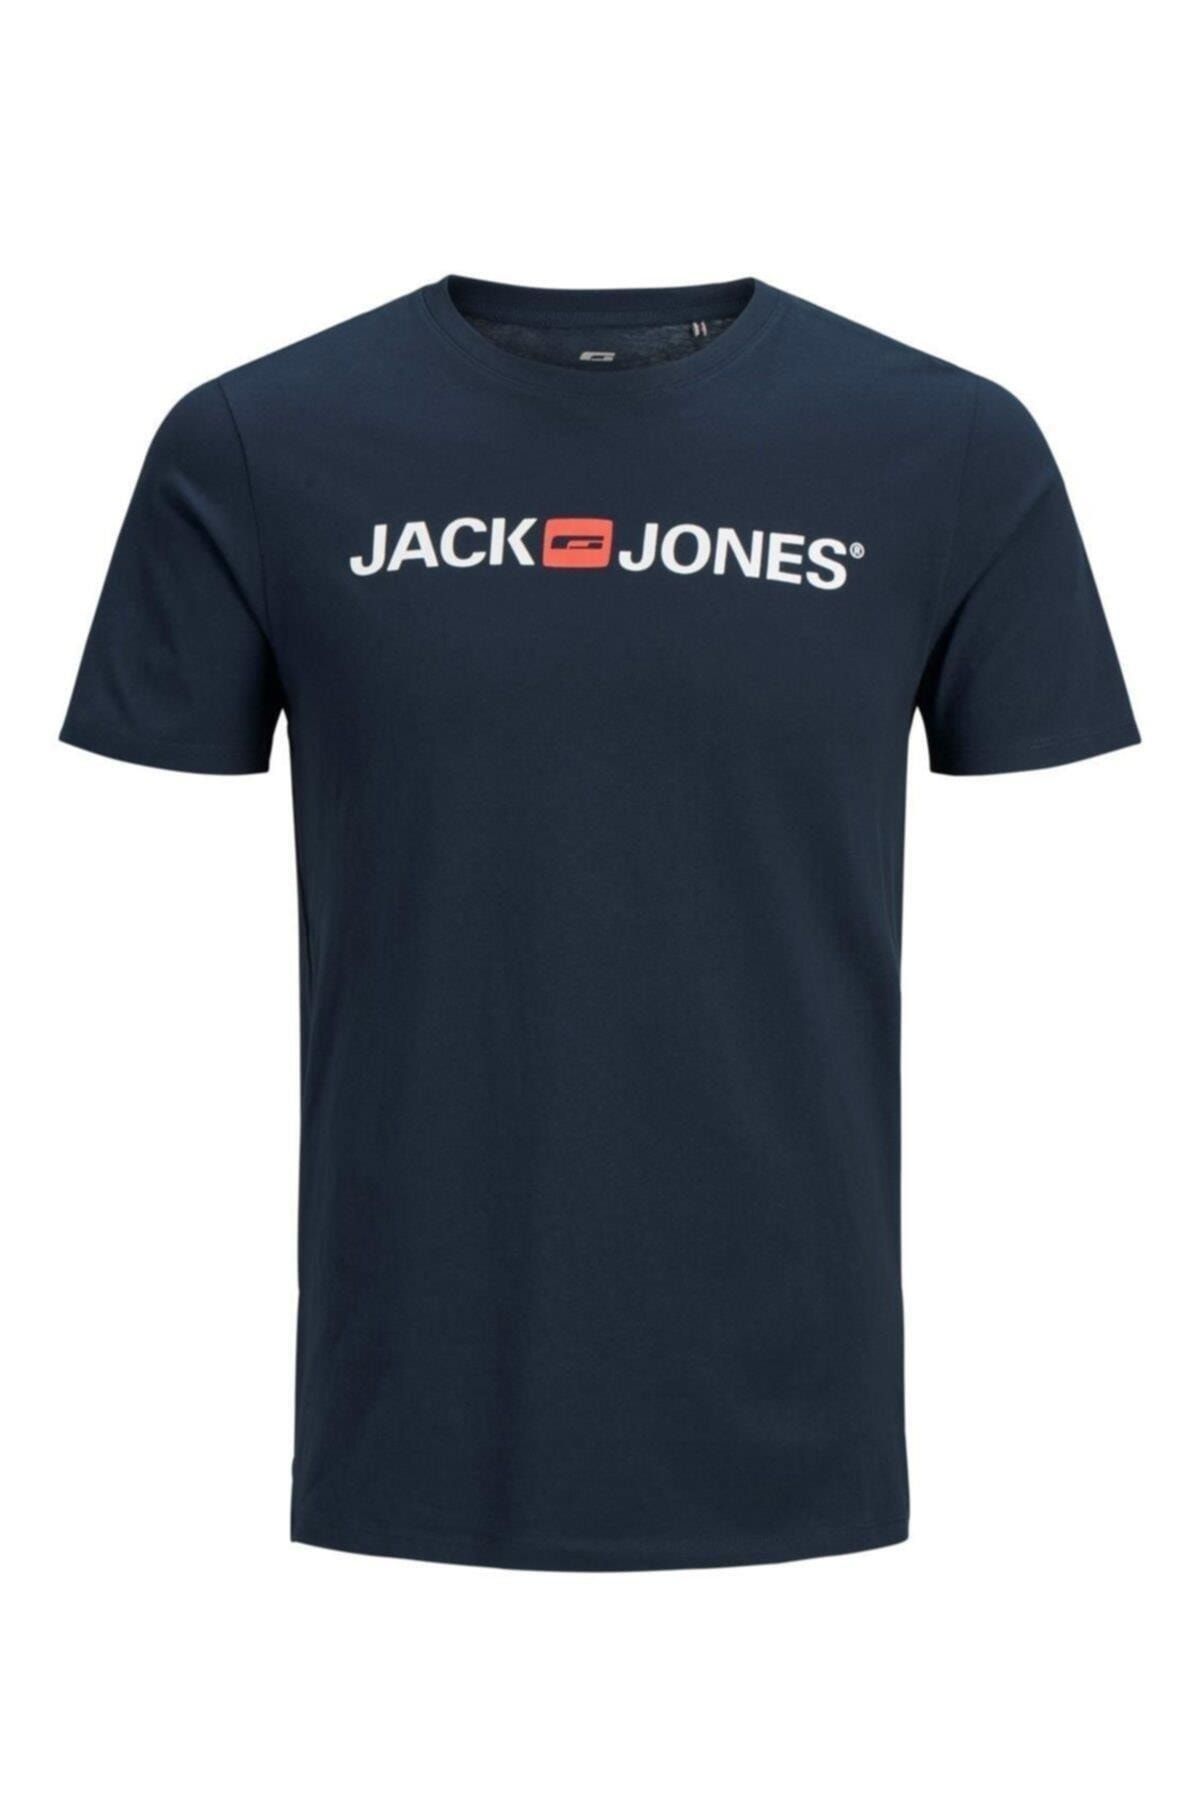 تیشرت سرمه ای مردانه جک اند جونز Jack & Jones (برند دانمارک)